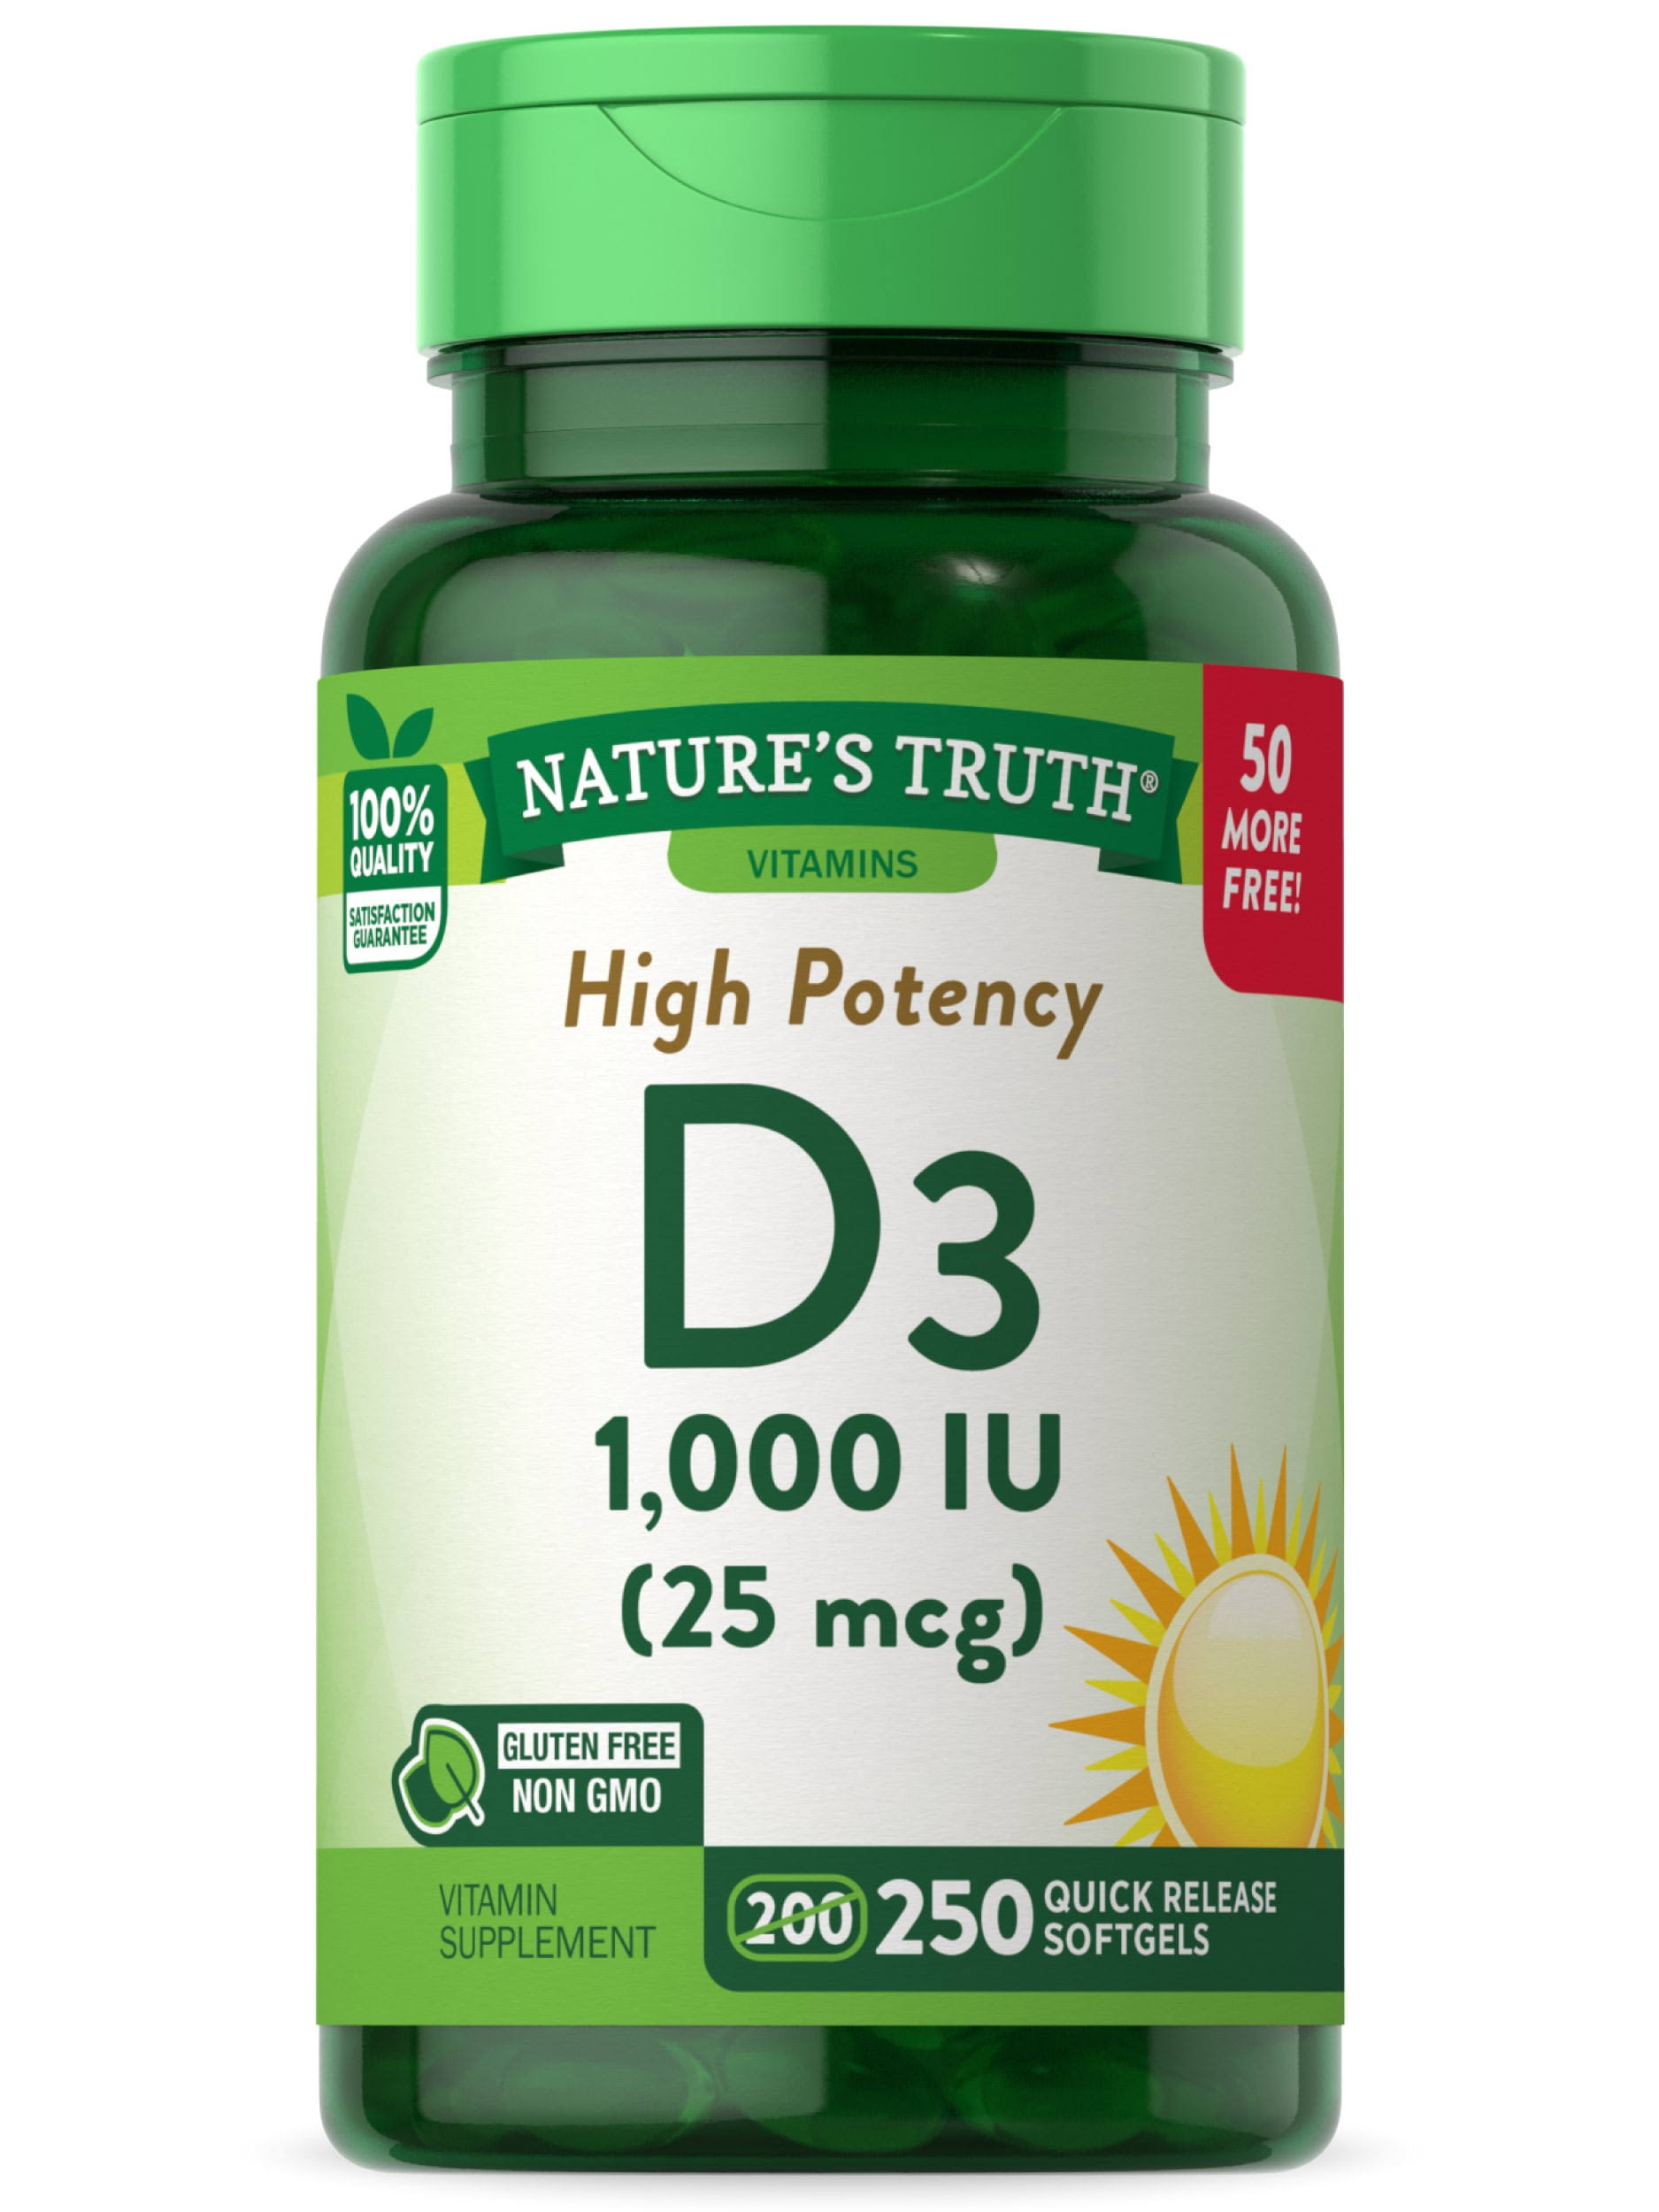 Nature's Truth High Potency Vitamin D3, 25 MCG (1,000 IU), 250 Quick Softgels